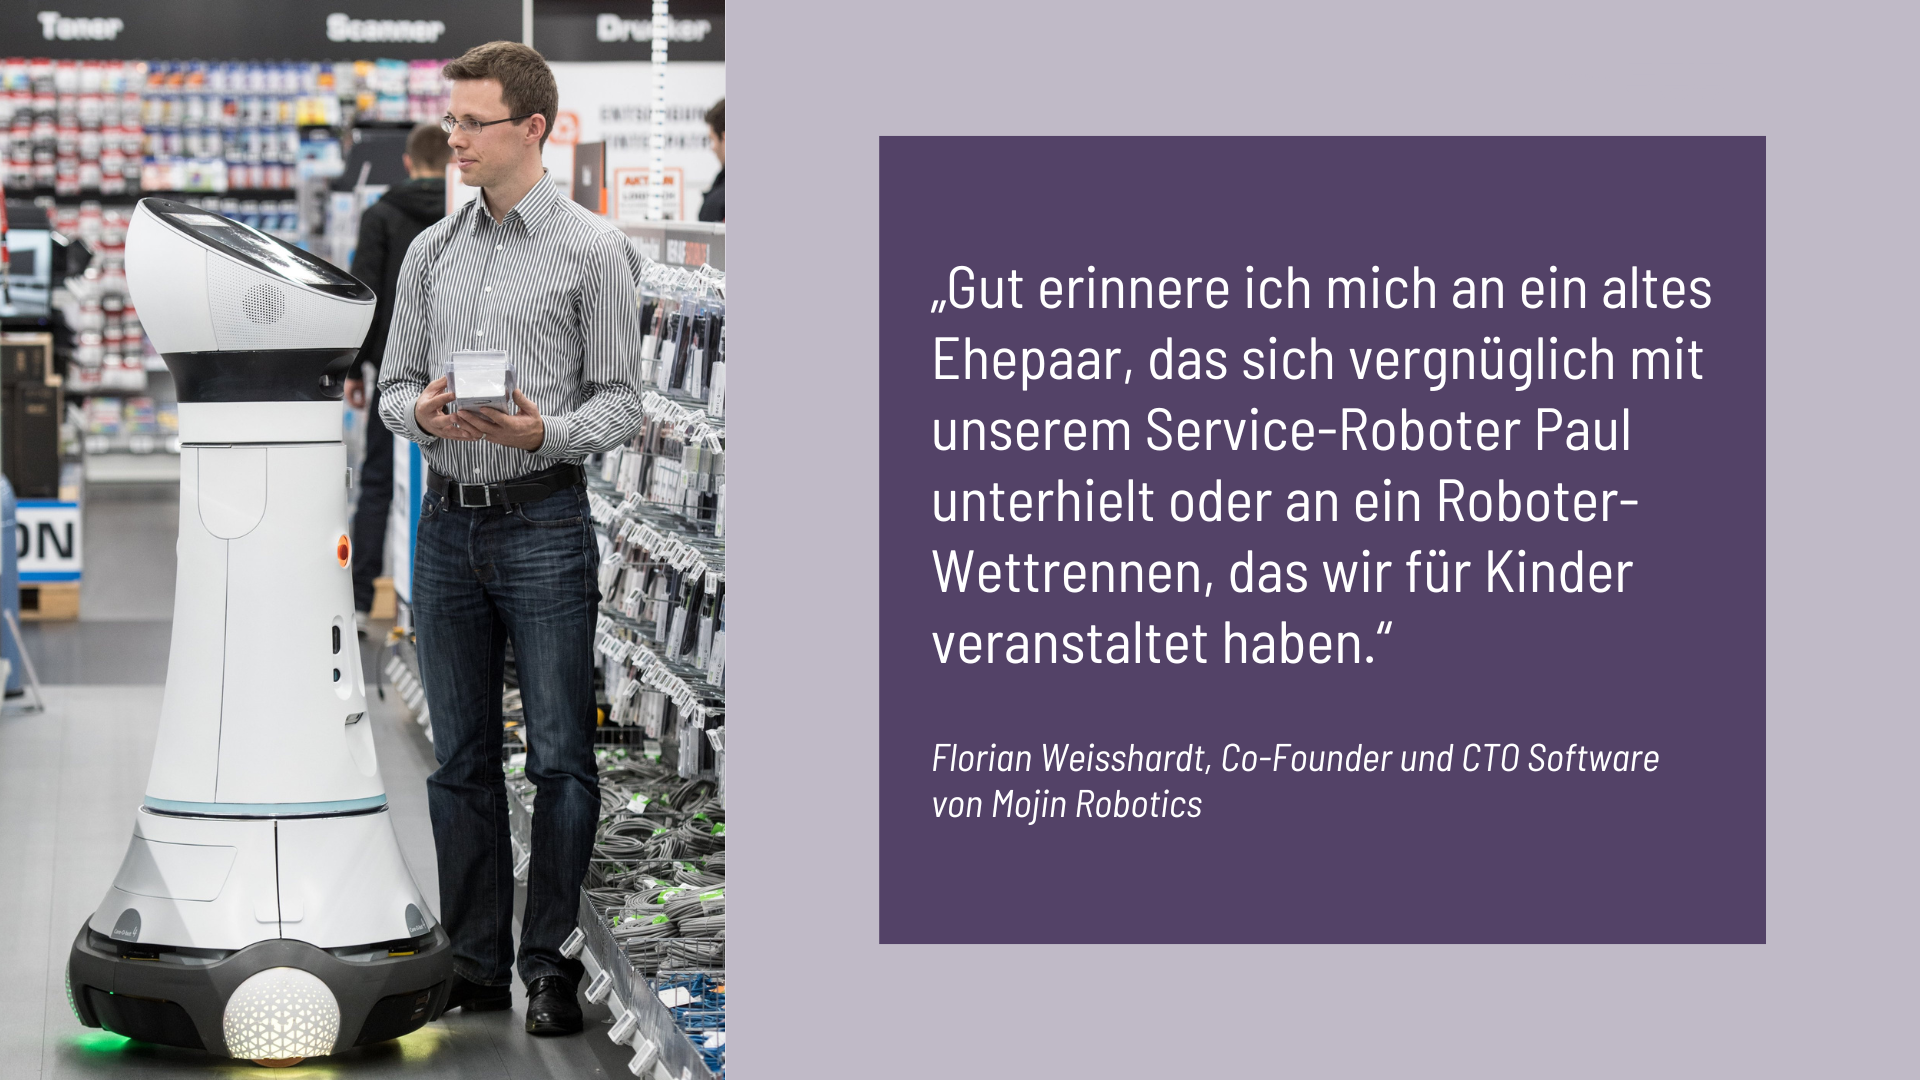 Florian Weisshardt, Co-Founder und CTO Software von Mojin Robotics